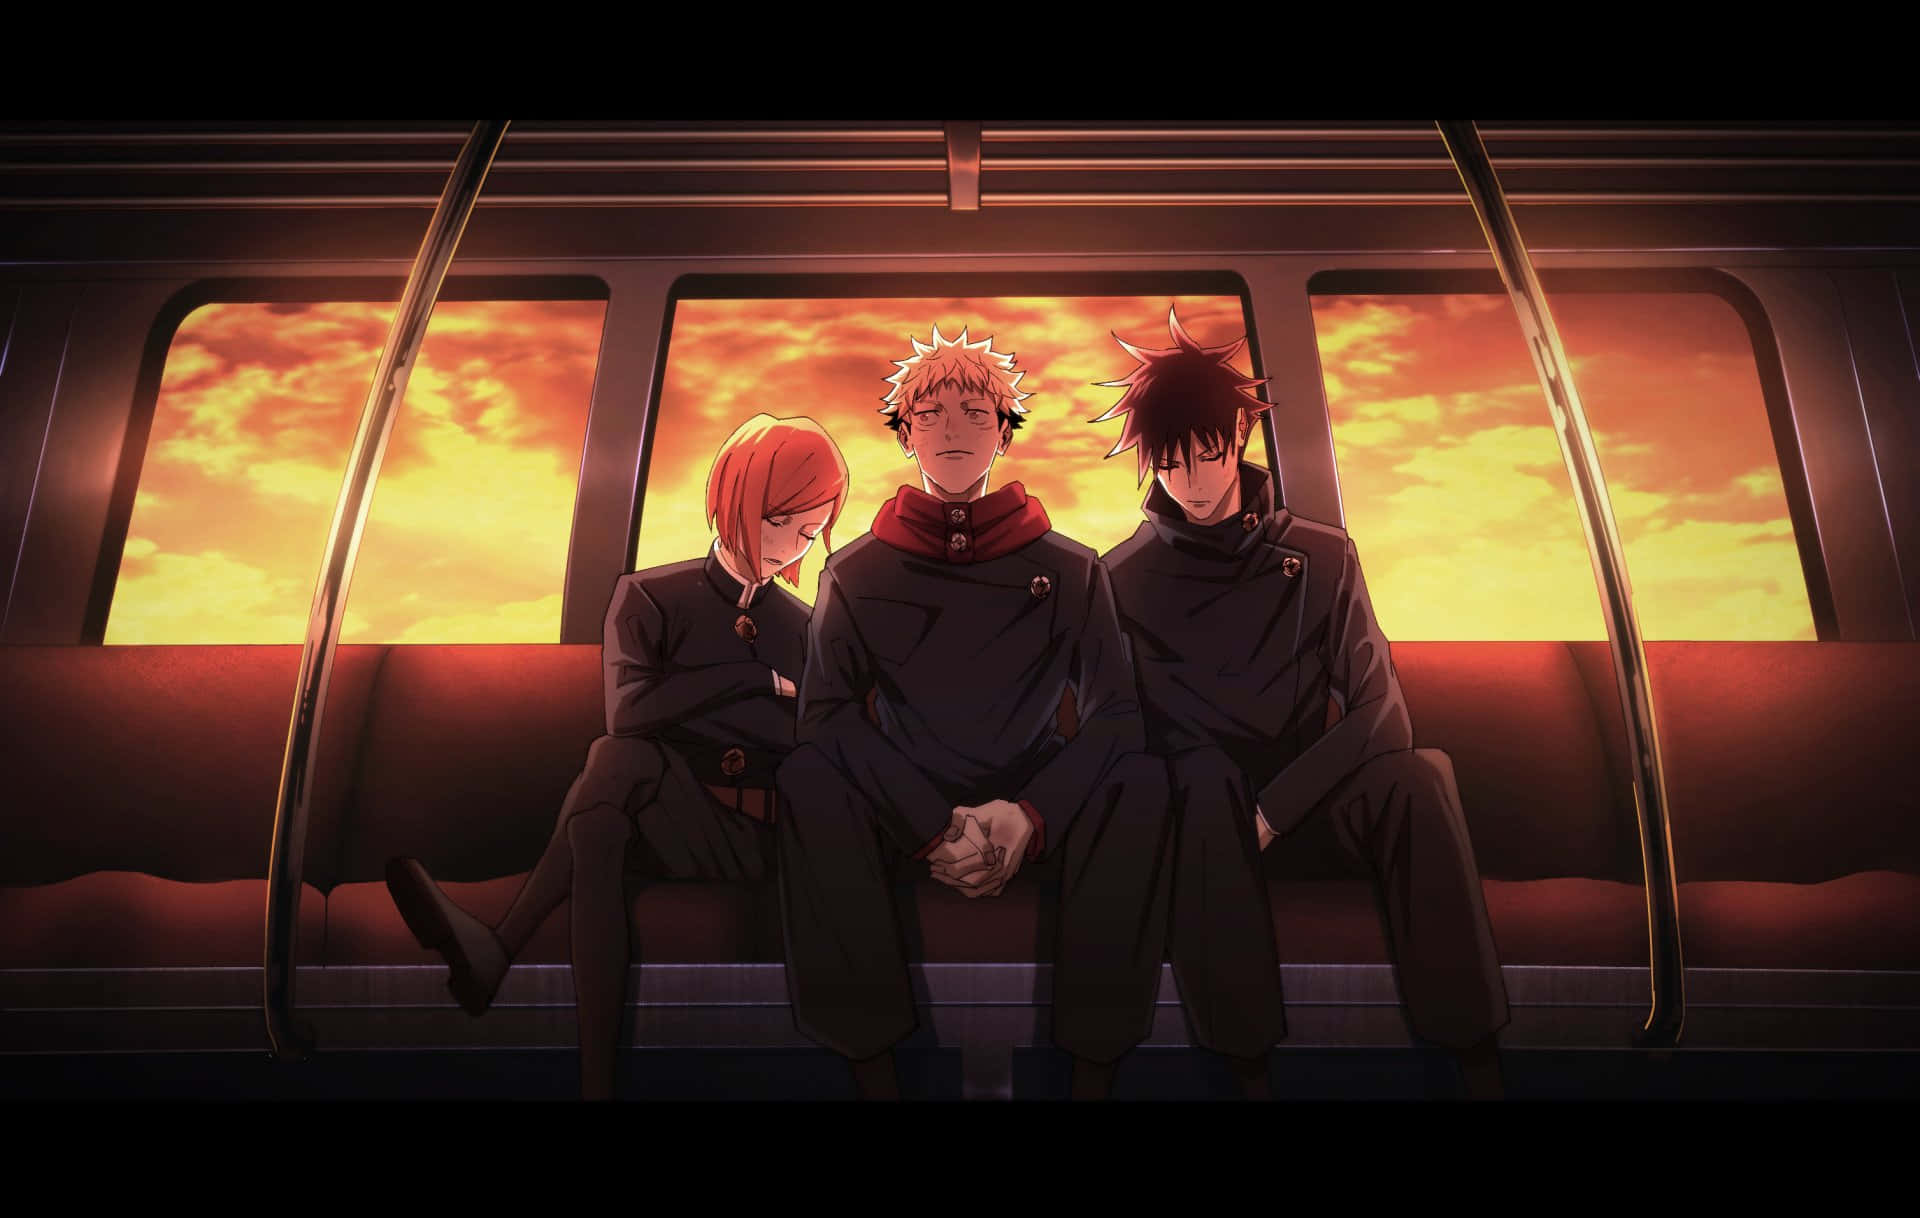 Jujutsu Kaisen_ Trio On Train At Sunset Wallpaper